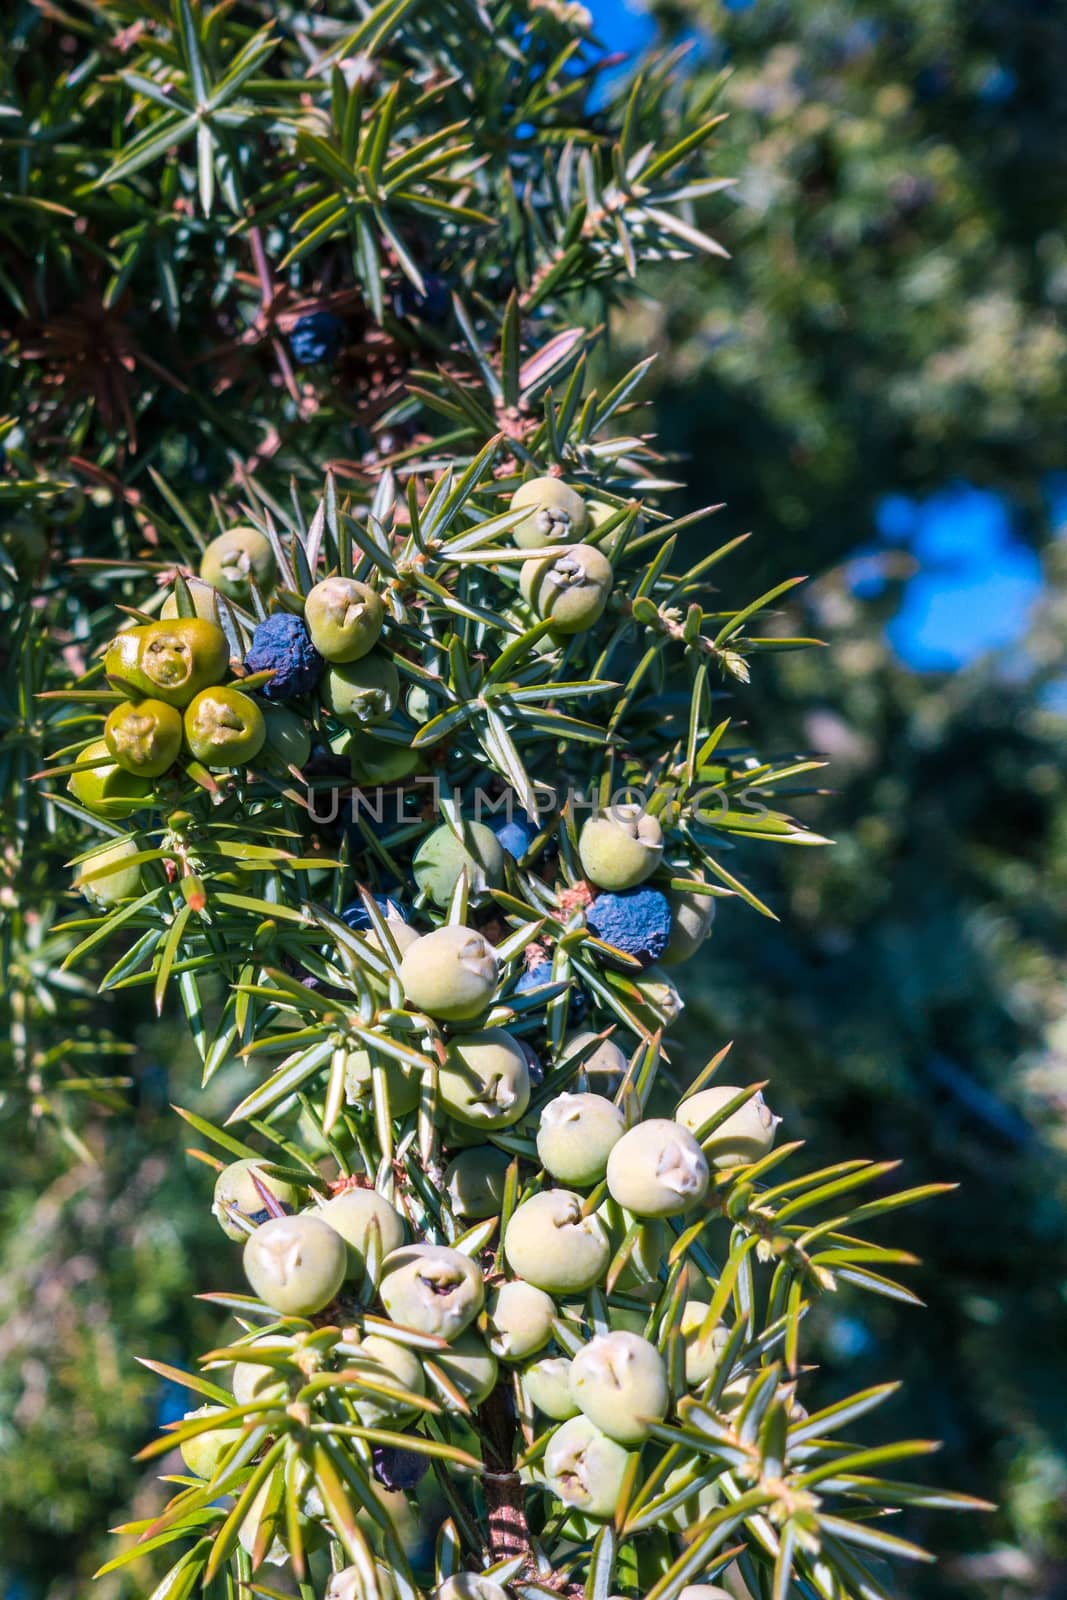 Juniper berries by thomas_males